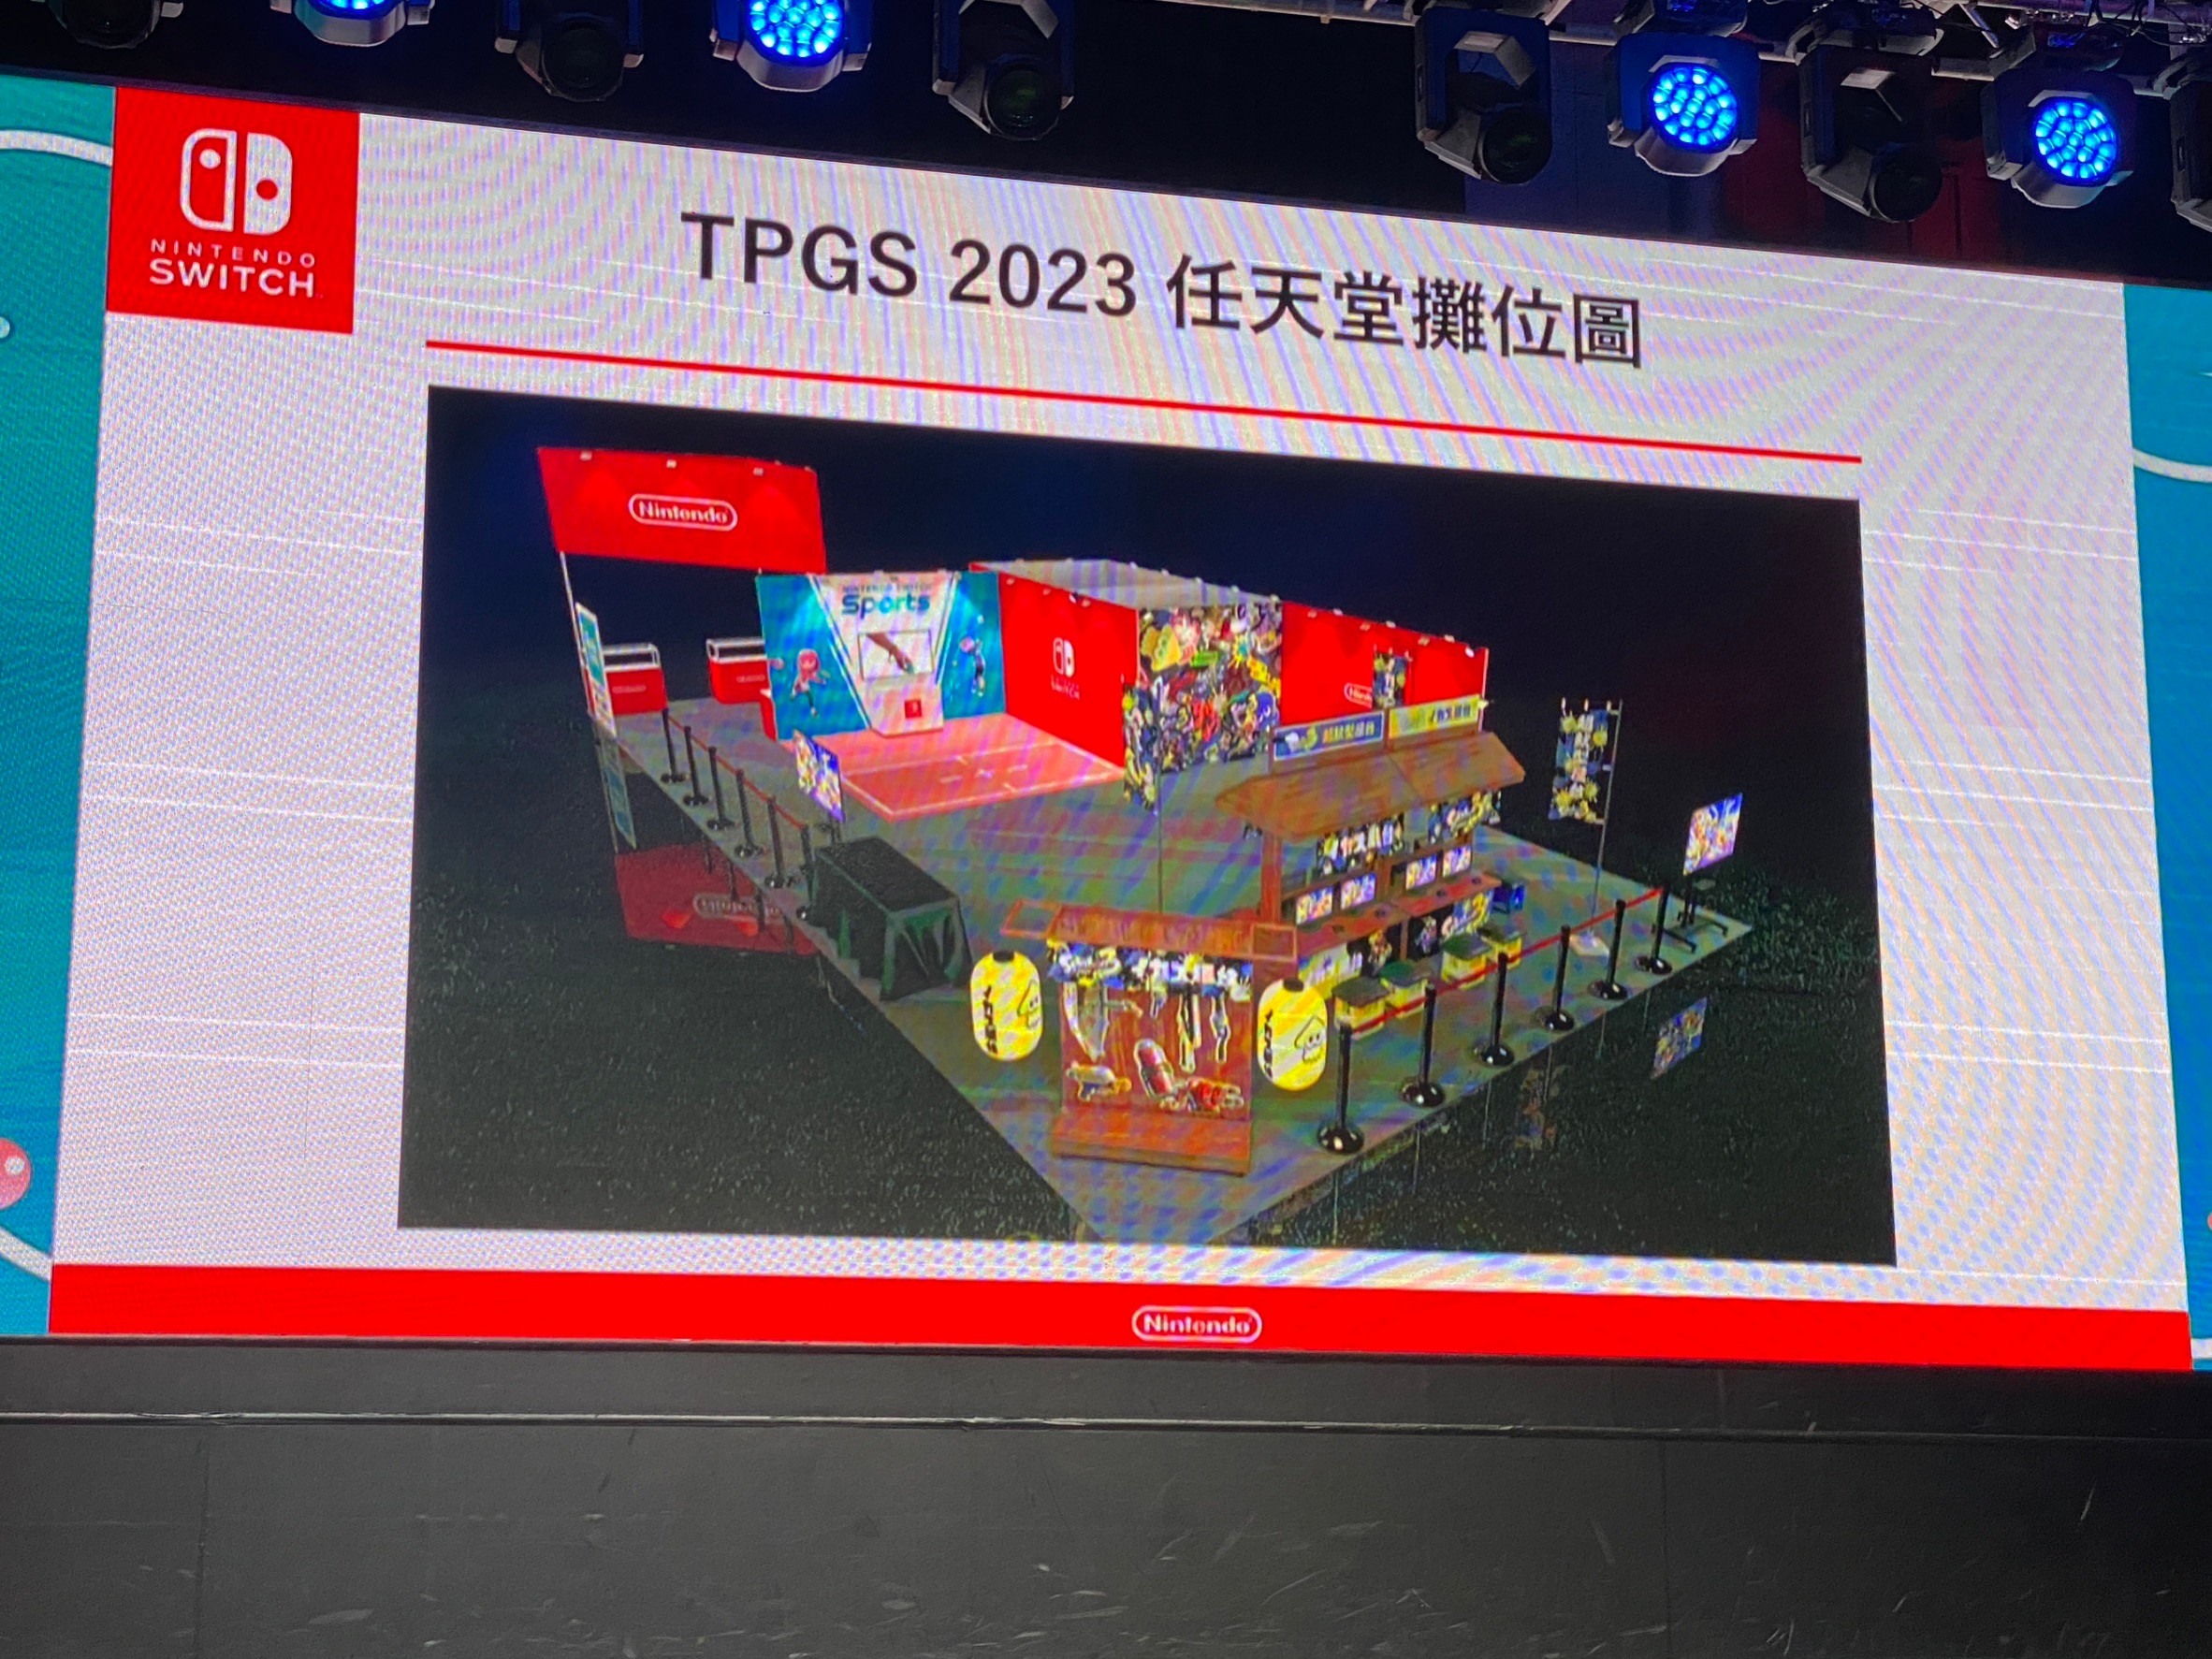 【TpGS 23】任天堂宣布参加台北电玩展 将设置《斯普拉遁 3》与《NS 运动》体验区插图2